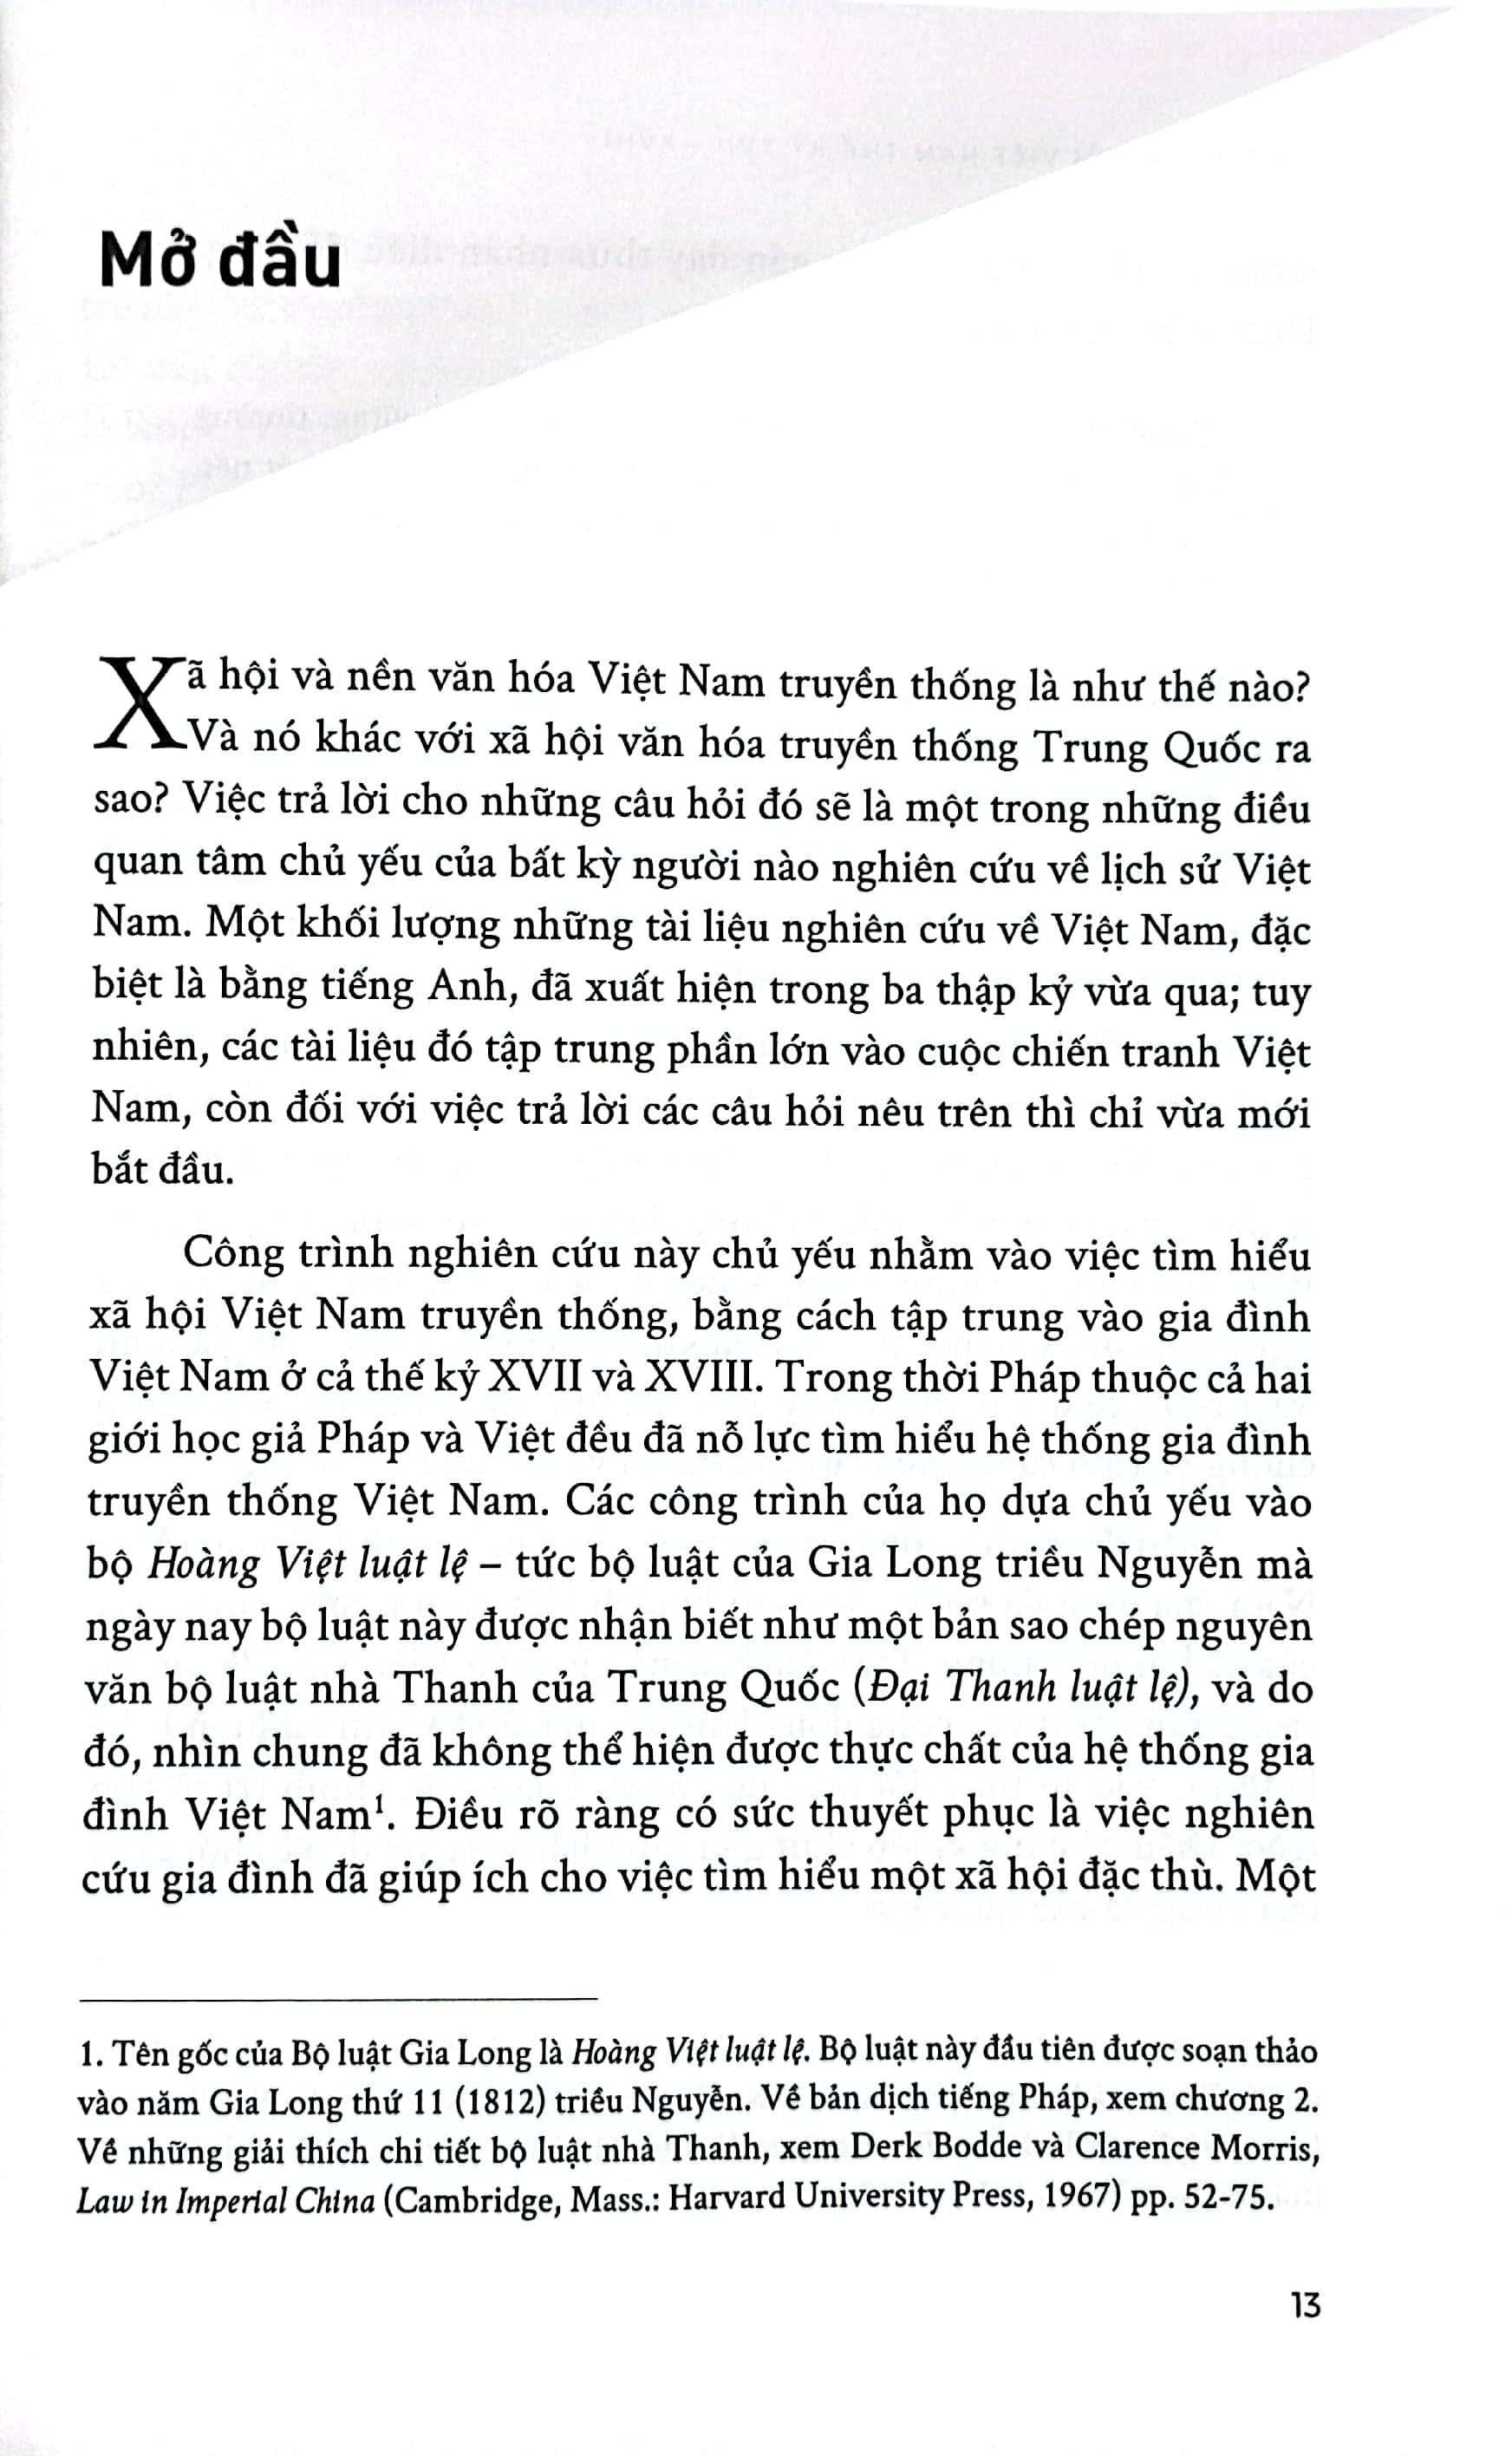 Luật Và Xã Hội Việt Nam Thế Kỷ XVII - XVIII